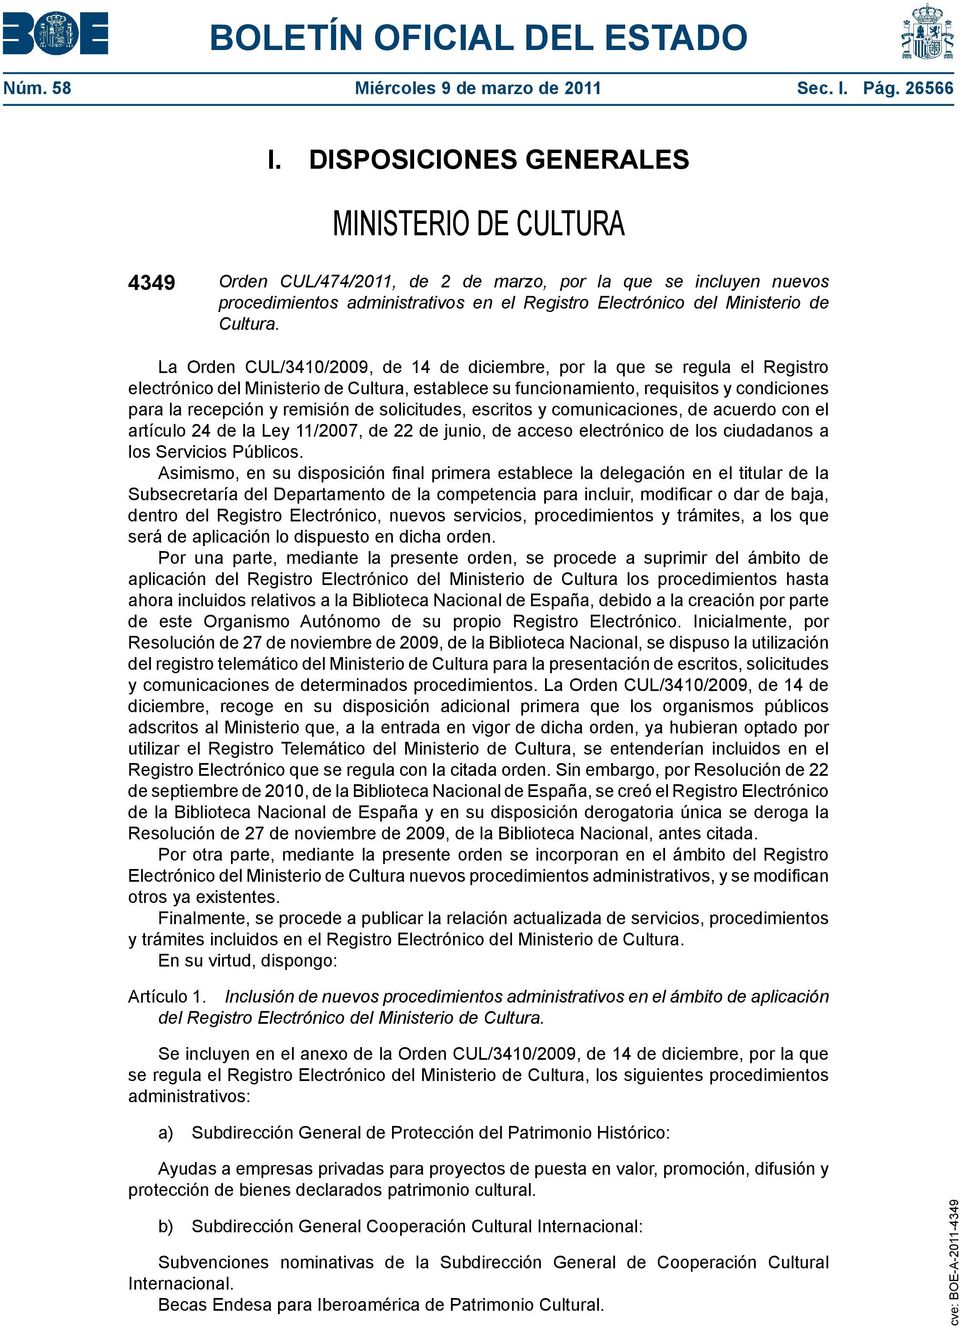 La Orden CUL/3410/2009, de 14 de diciembre, por la que se regula el Registro electrónico del Ministerio de Cultura, establece su funcionamiento, requisitos y condiciones para la recepción y remisión